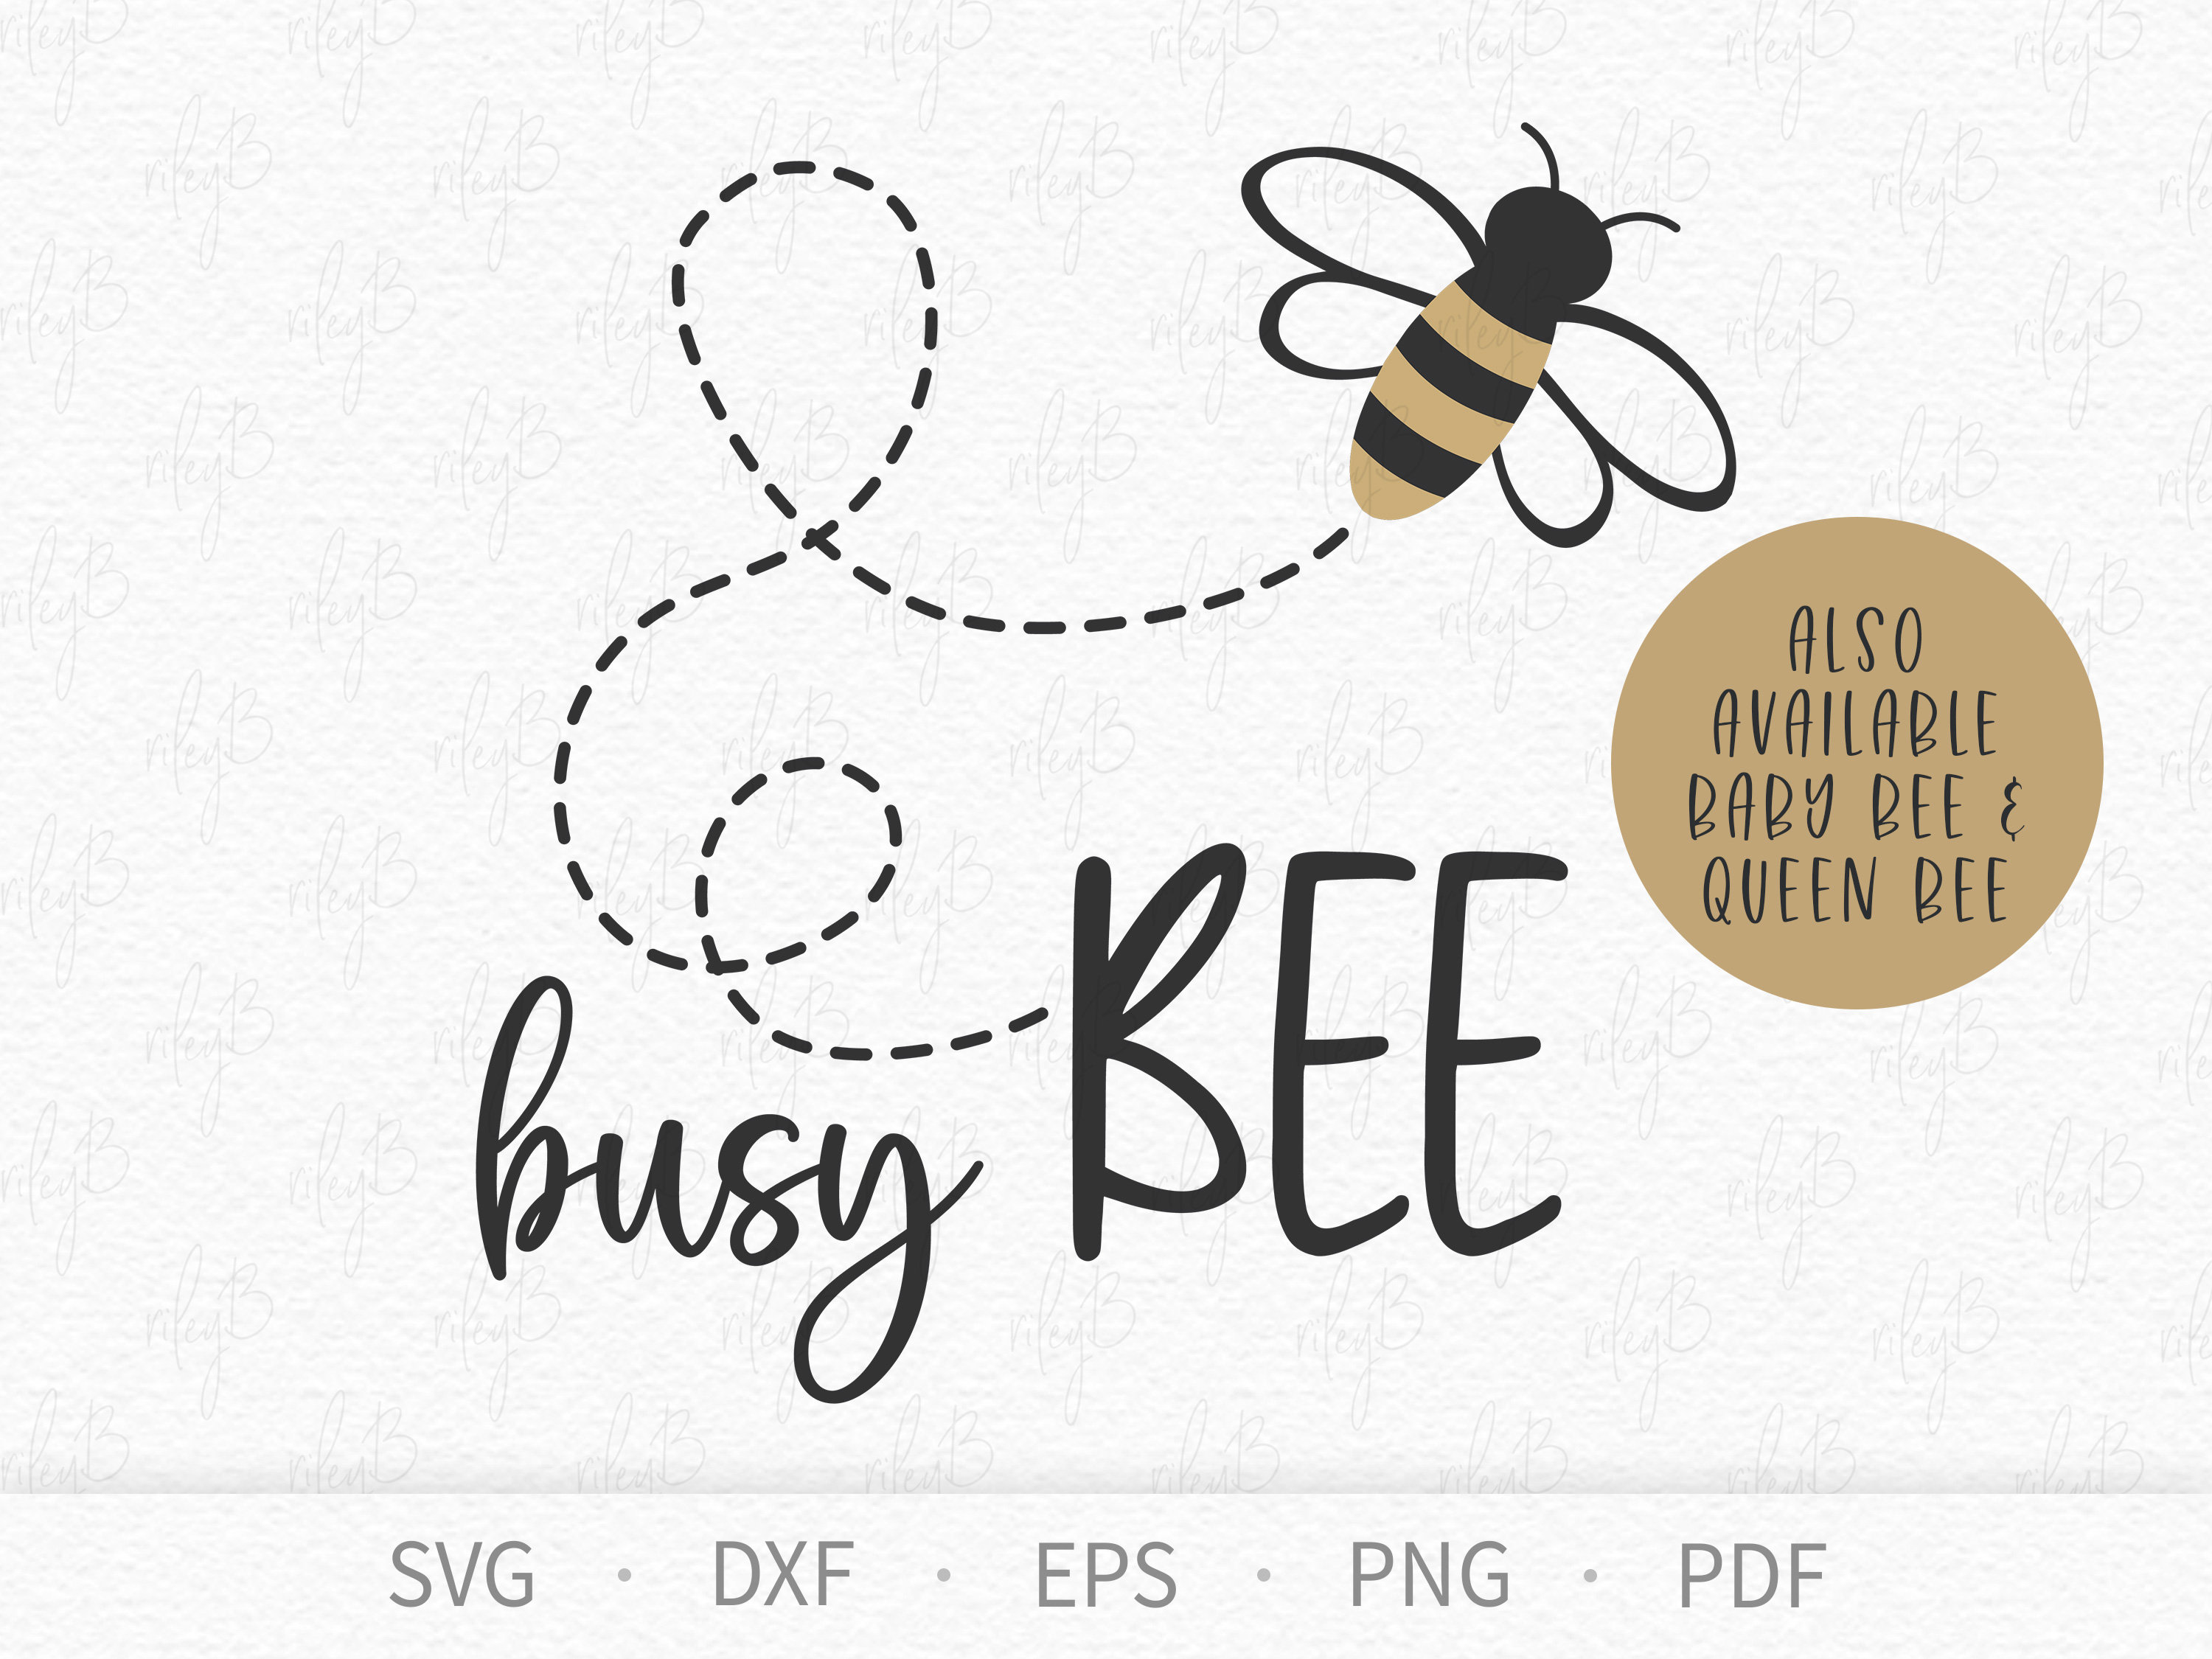 Busy Bee Art - Etsy Canada